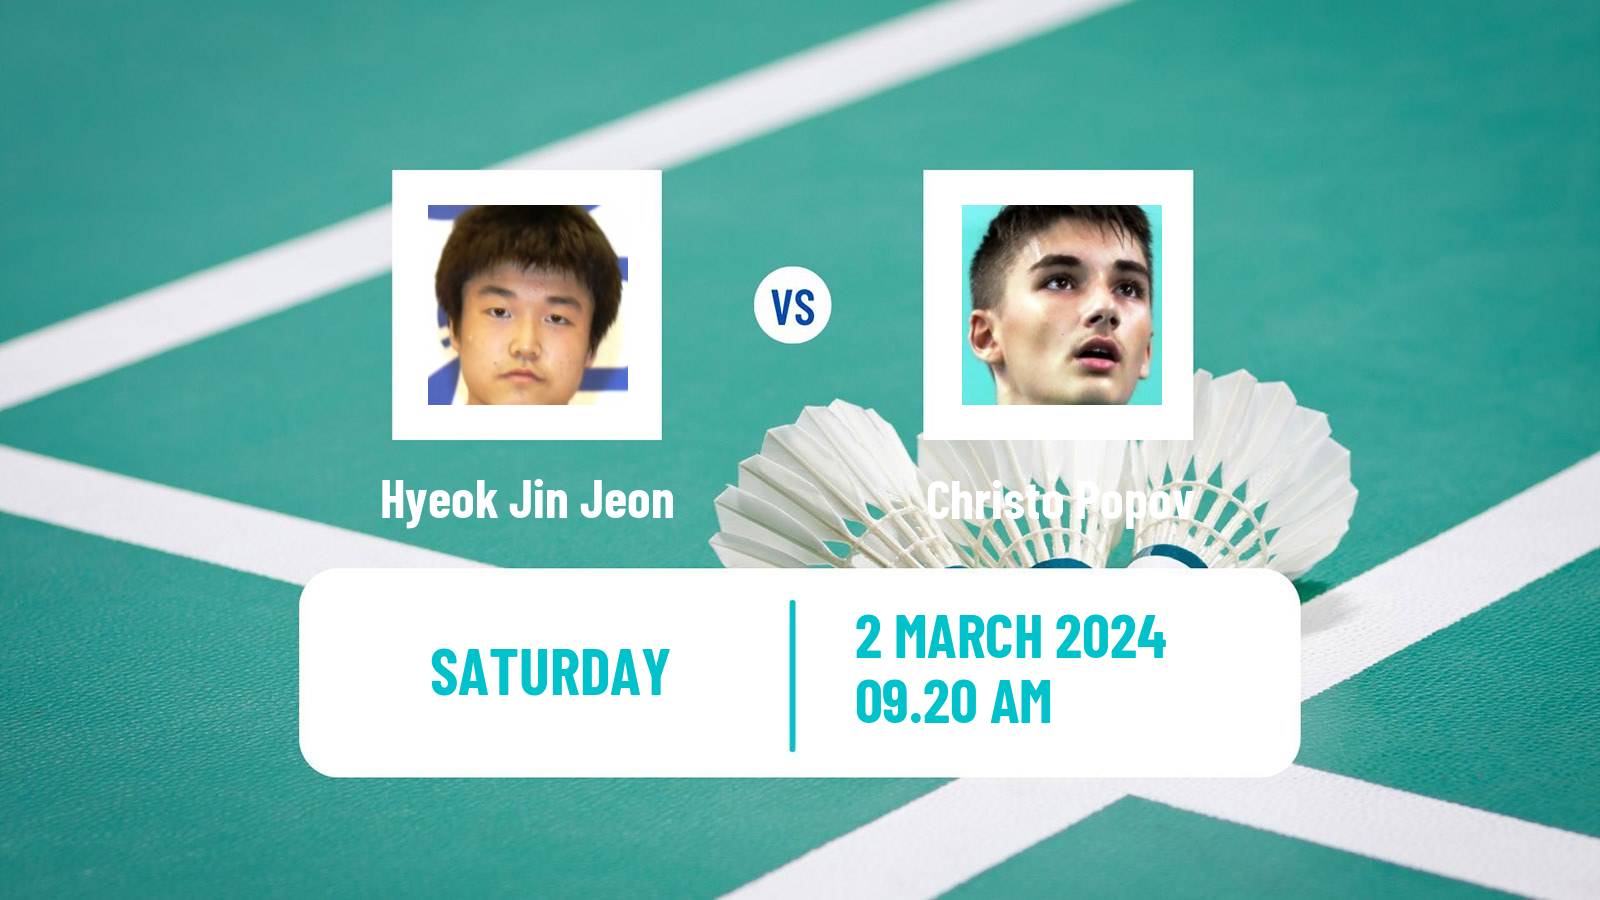 Badminton BWF World Tour German Open Men Hyeok Jin Jeon - Christo Popov